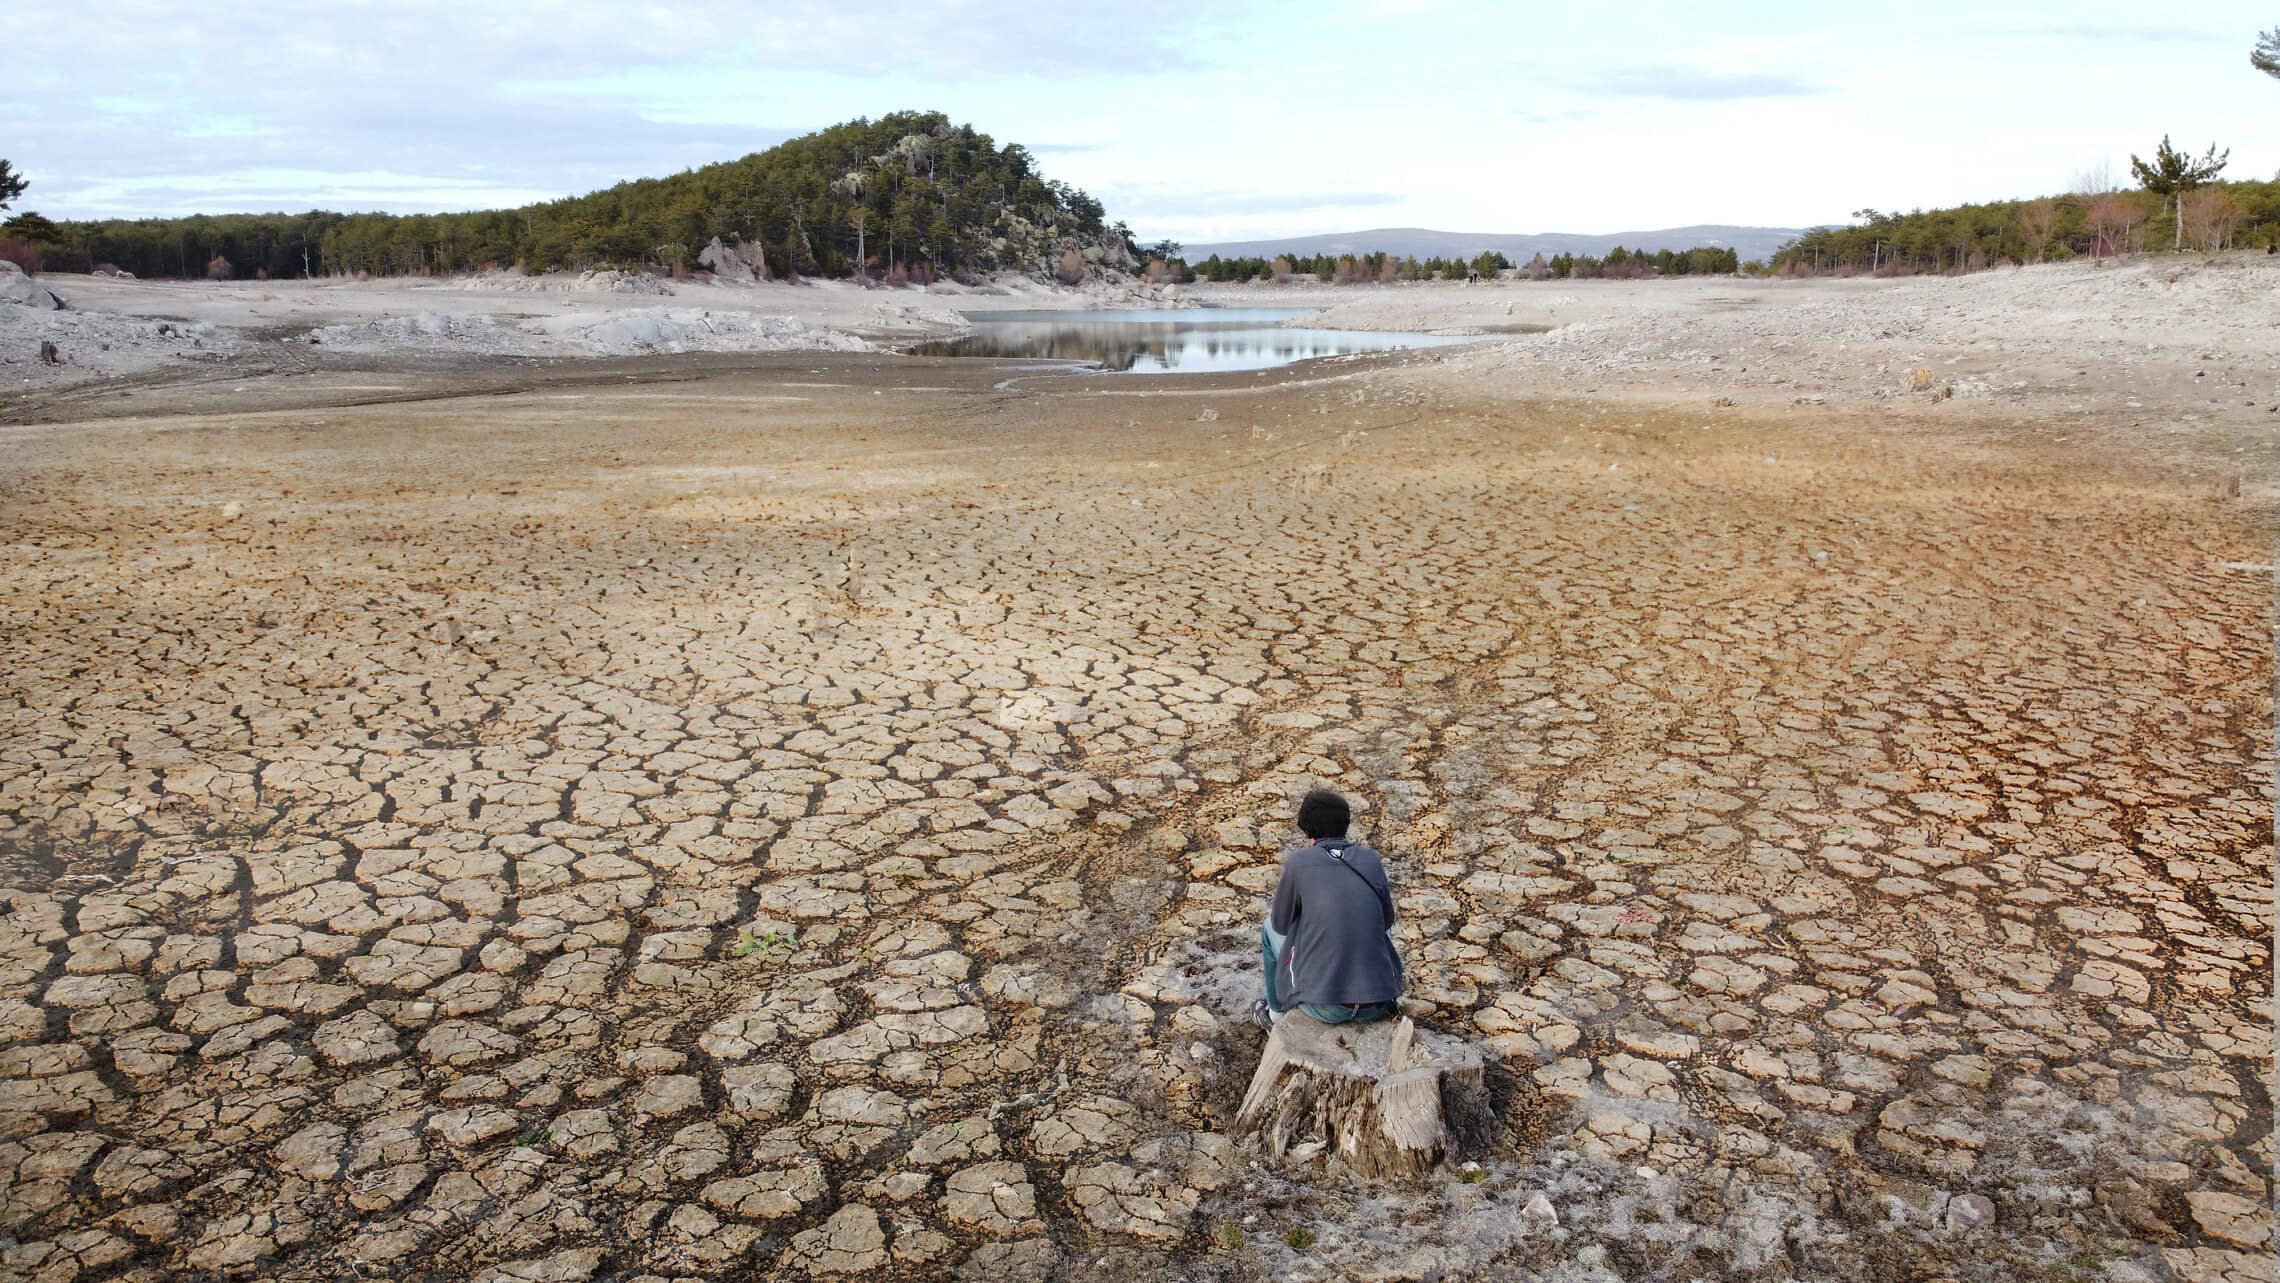 משבר האקלים, אילוסטרציה (צילום: Selçuk KARABIYIK, istock)